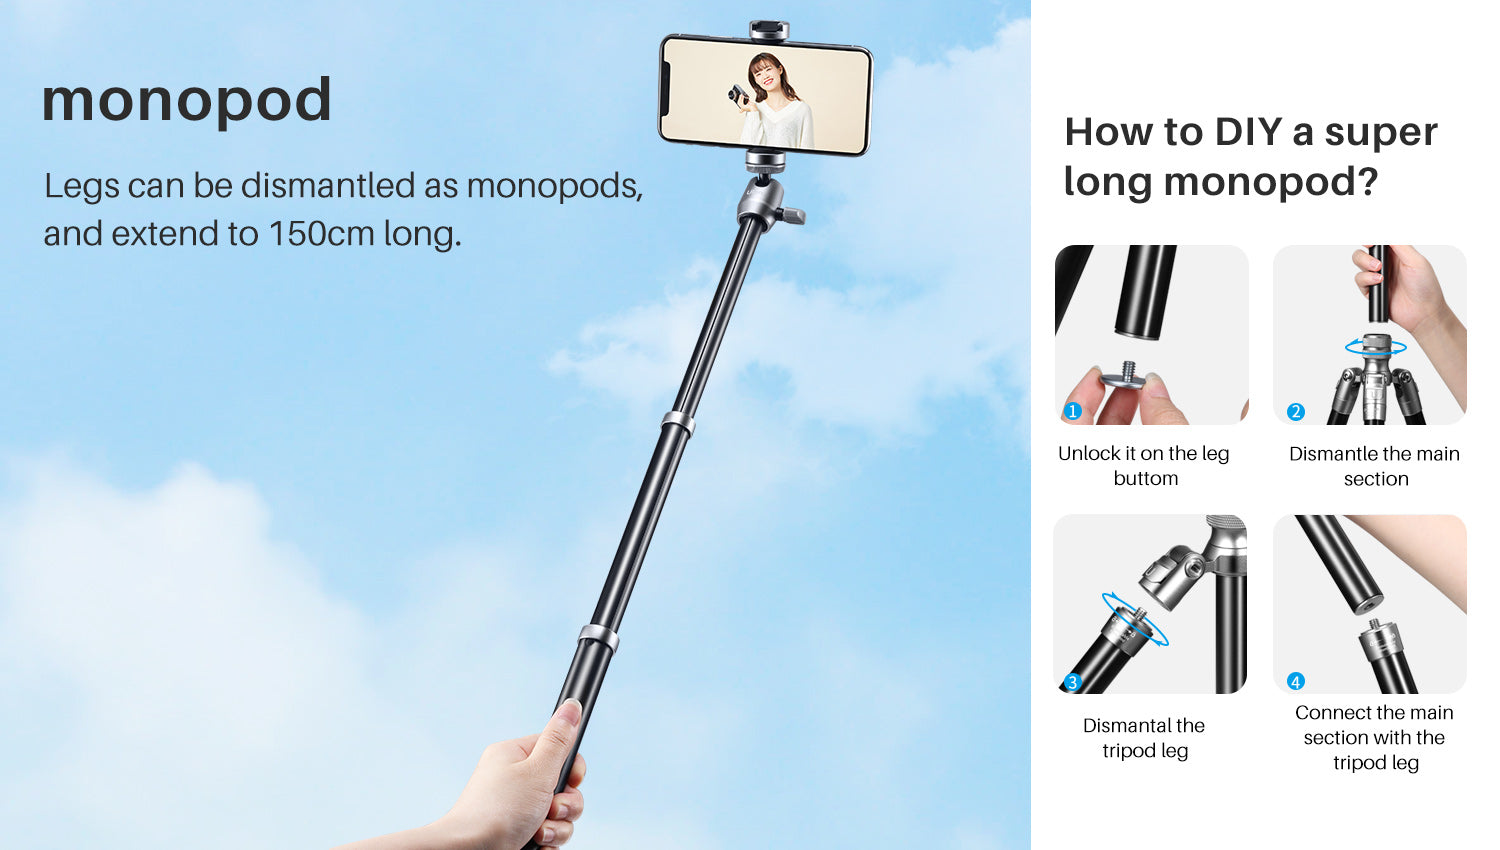 Ulanzi SK-04 2-in-1 Tripod & Selfie Stick